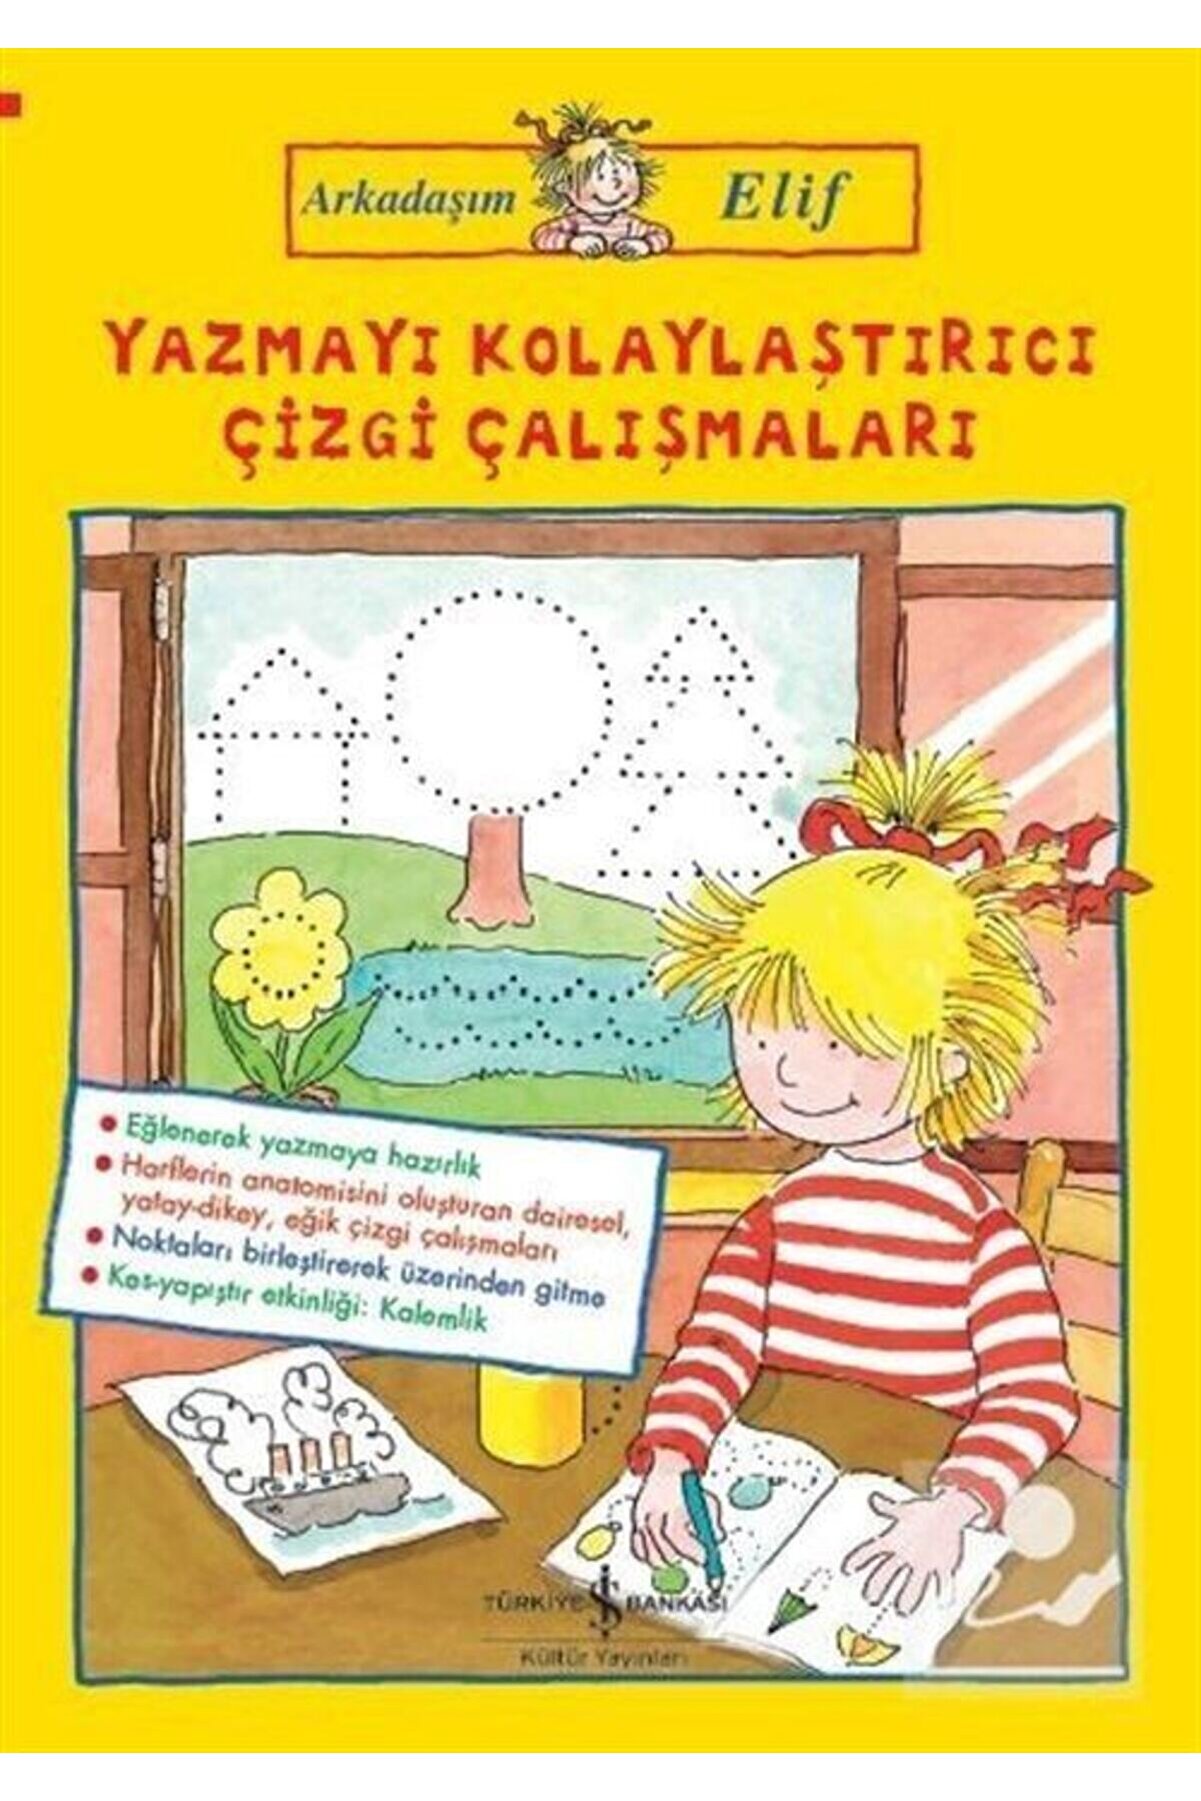 Türkiye İş Bankası Kültür Yayınları Arkadaşım Elif / Yazmayı Kolaylaştırıcı Çizgi Çalışmaları